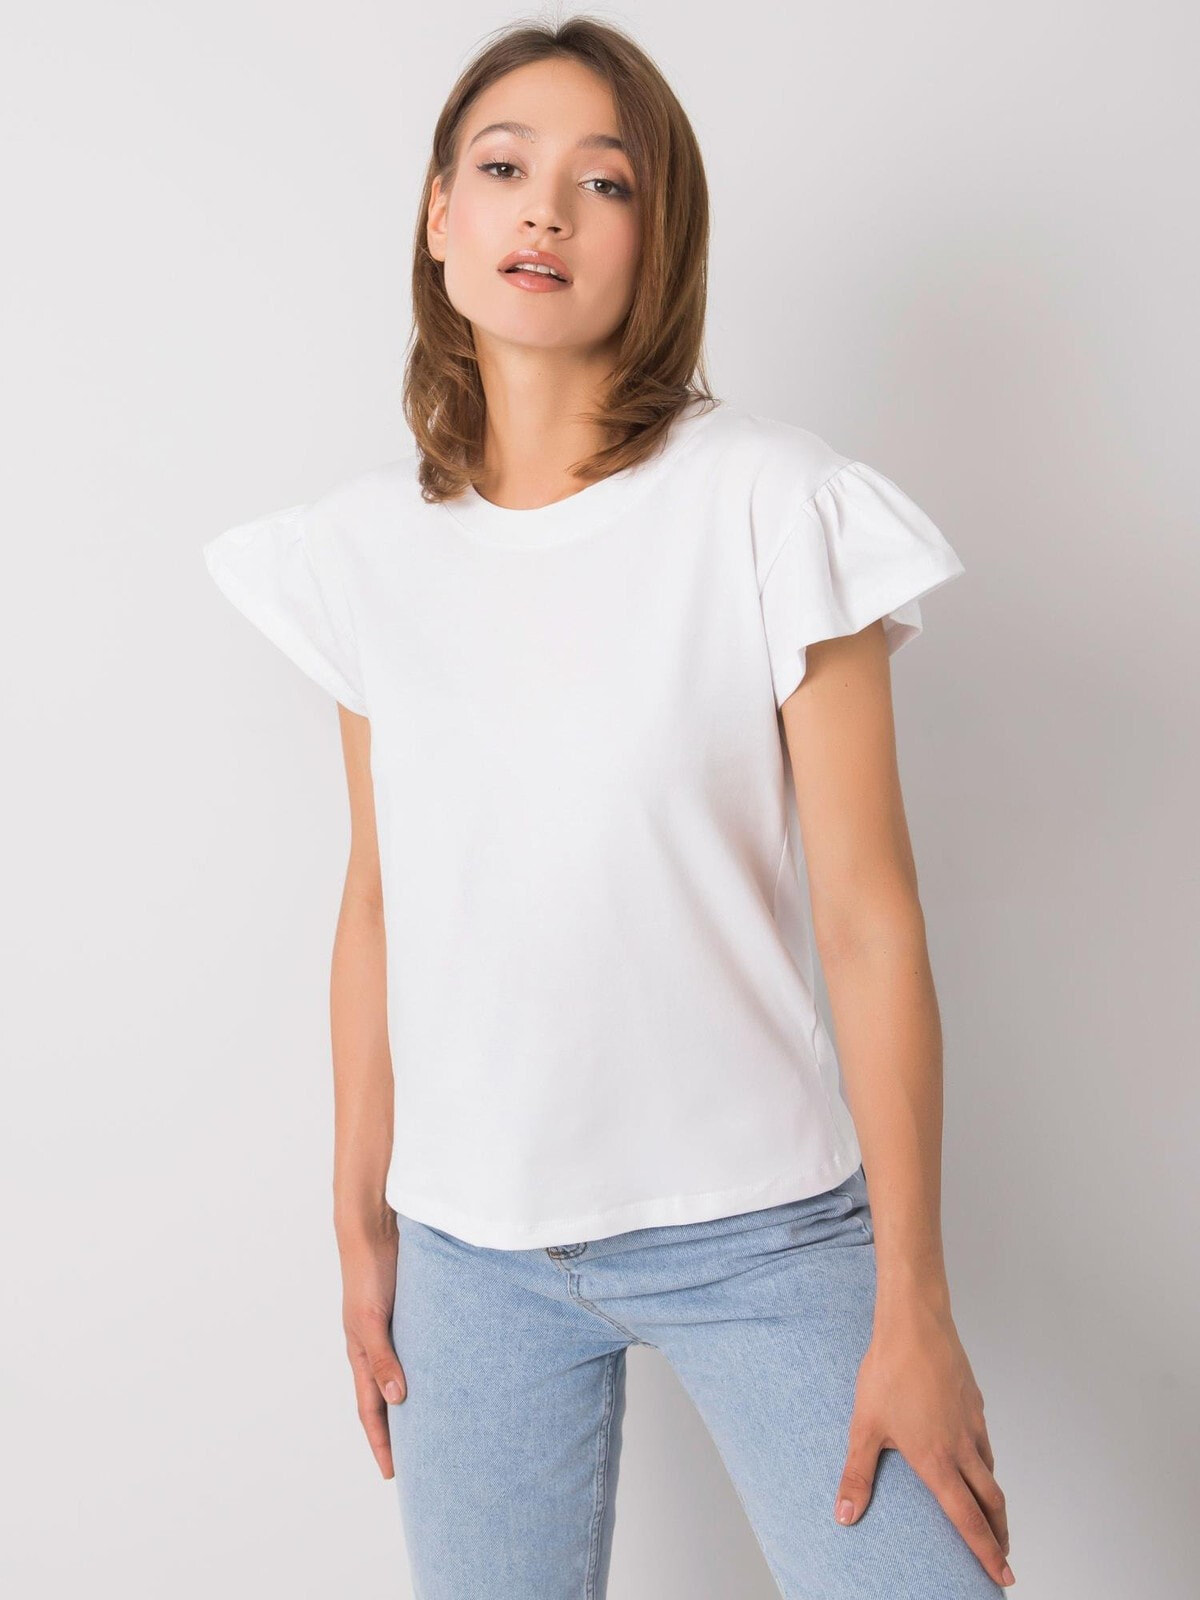 Женская блузка с коротким расклешенным рукавом Factory Price